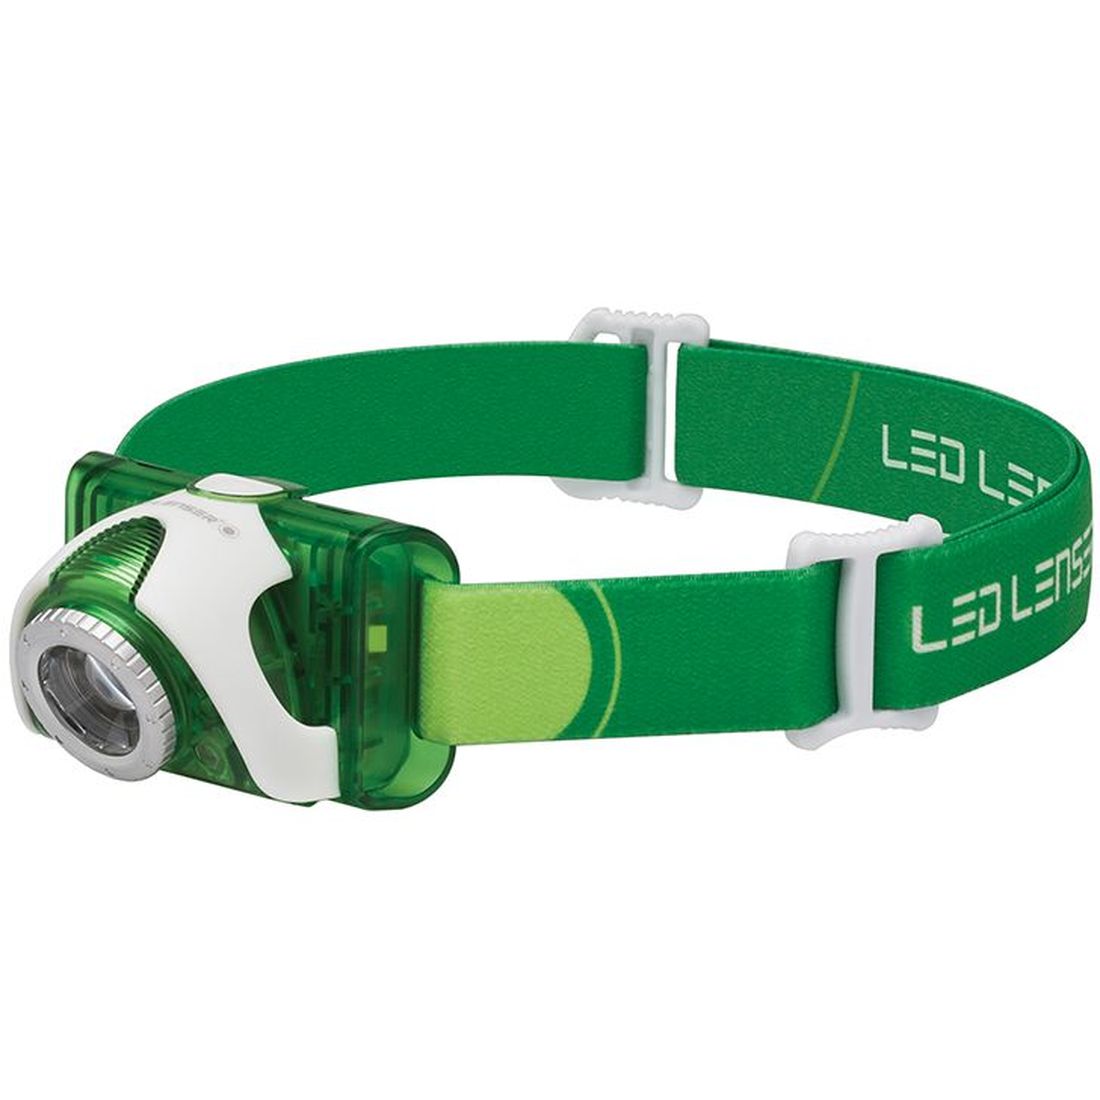 Ledlenser SEO3 LED Headlamp - Green (Test-It Pack)                                        